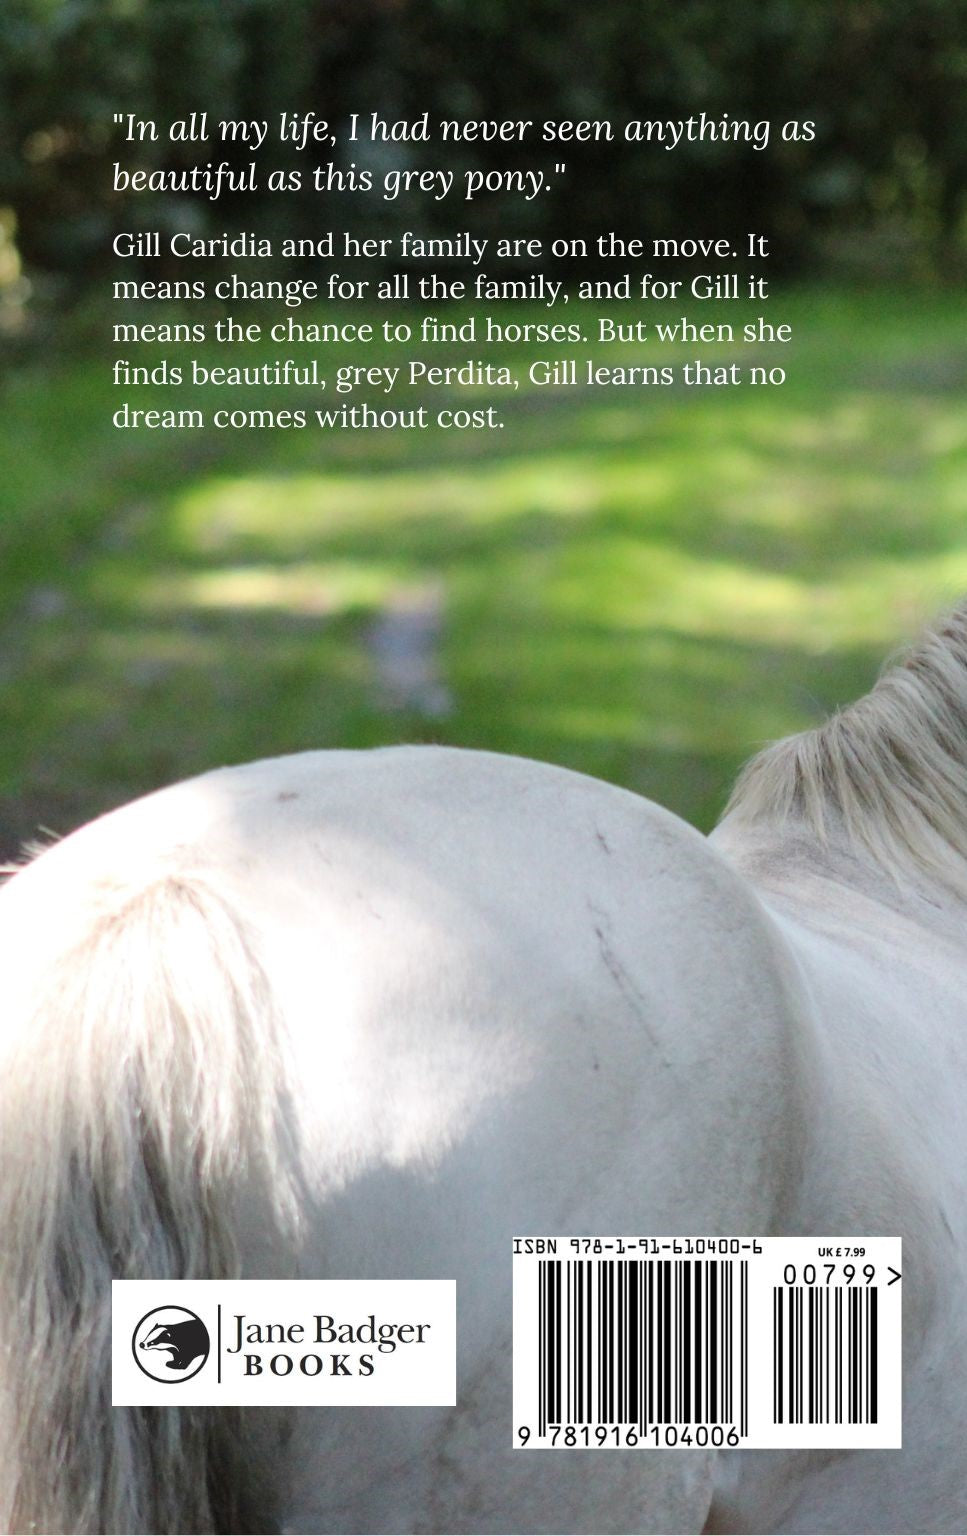 Patricia Leitch: Dream of Fair Horses (paperback)